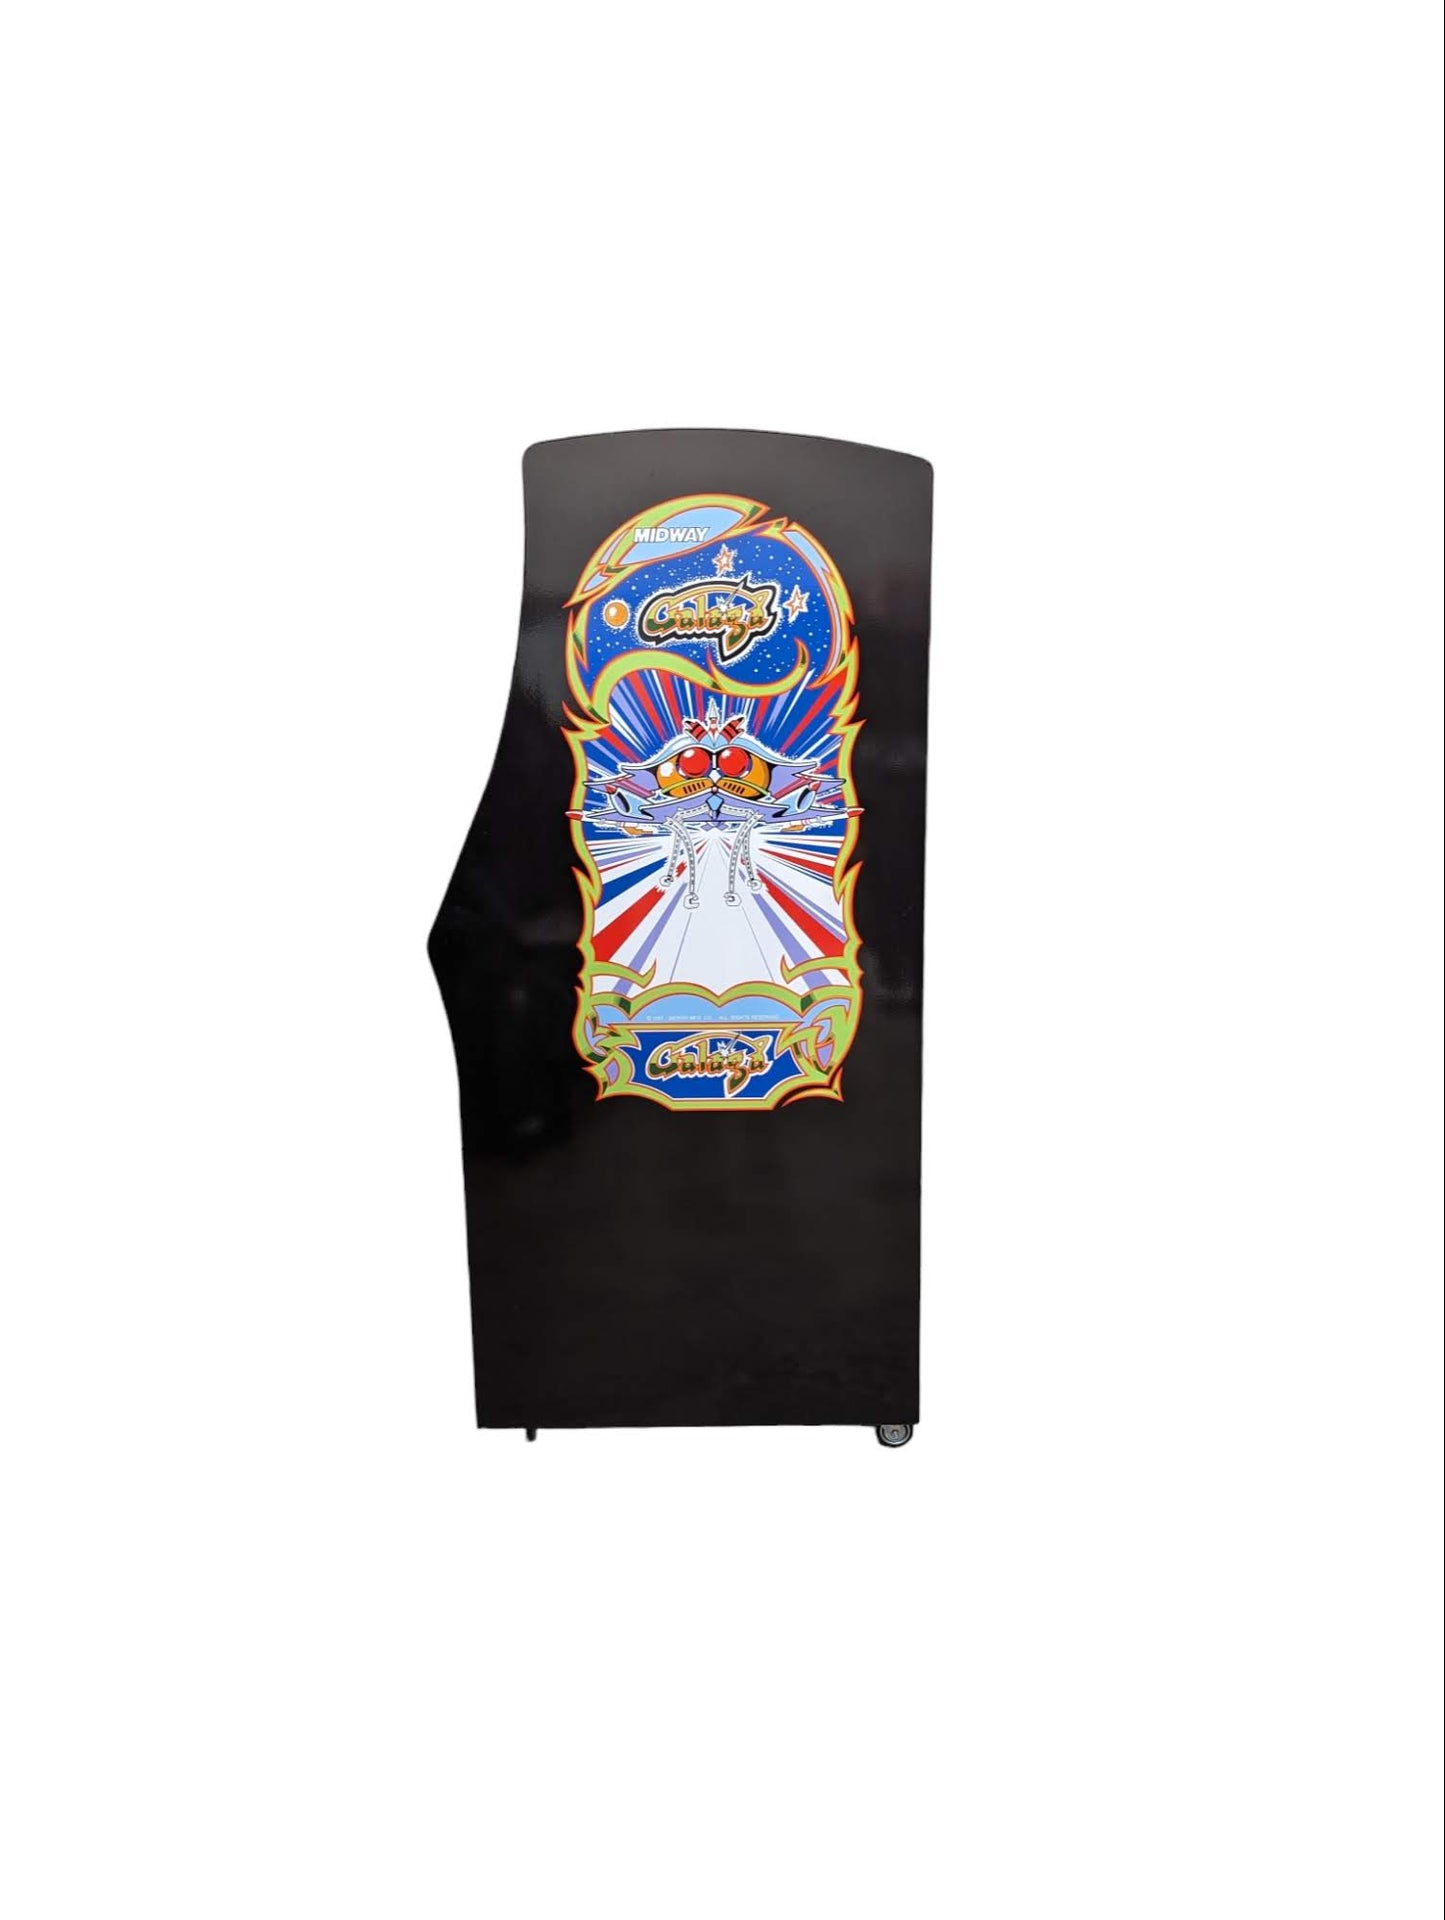 Galaga Arcade Machine - Accurate replica